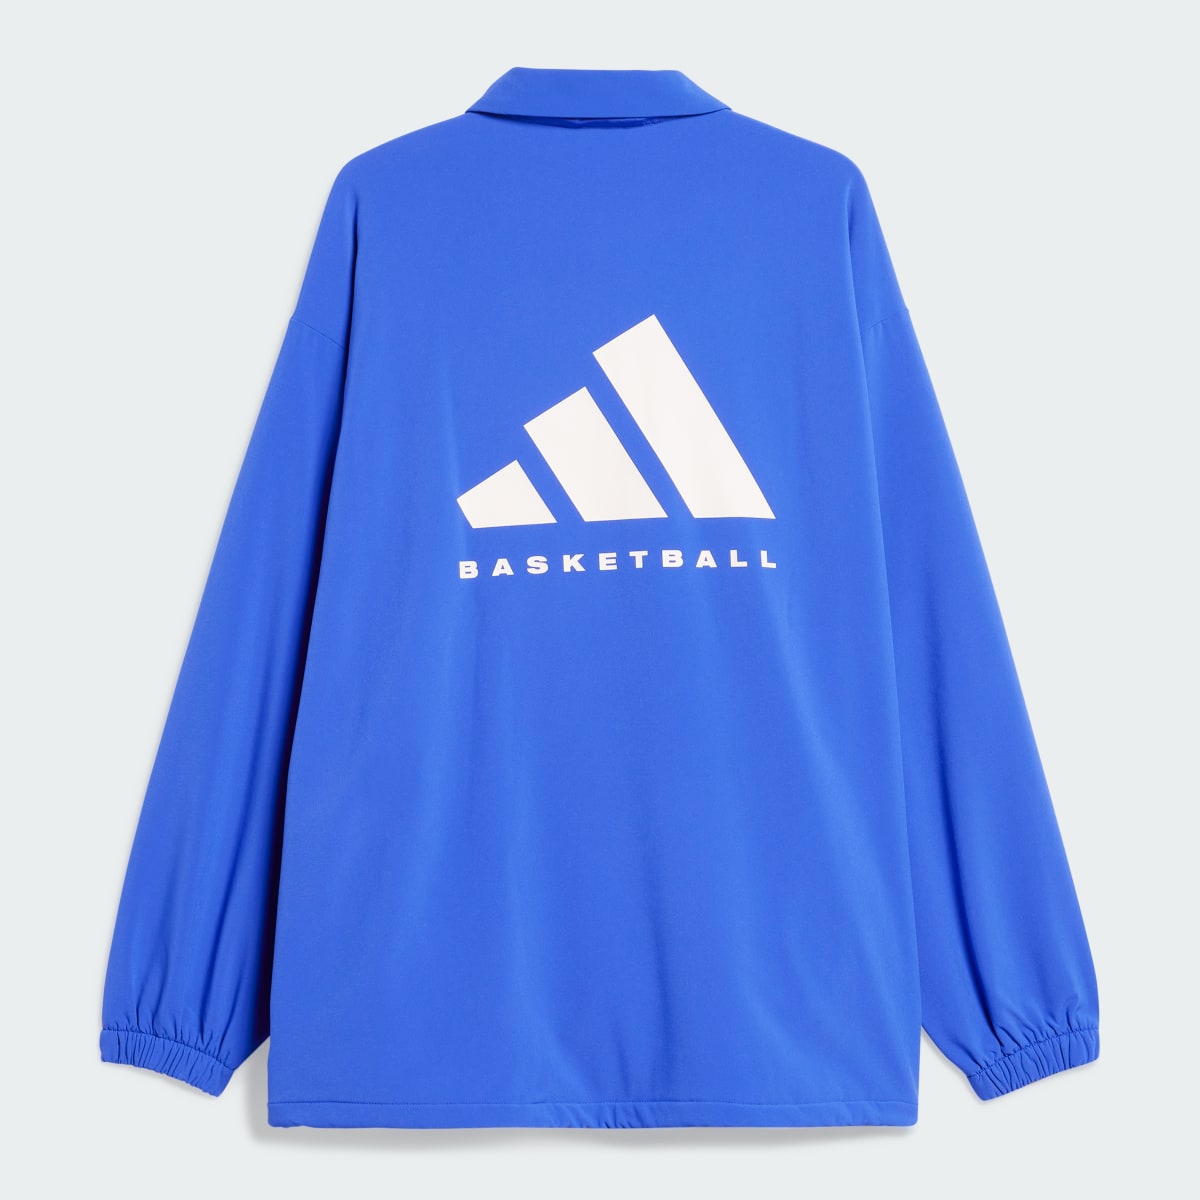 Adidas Casaco adidas Basketball. 5